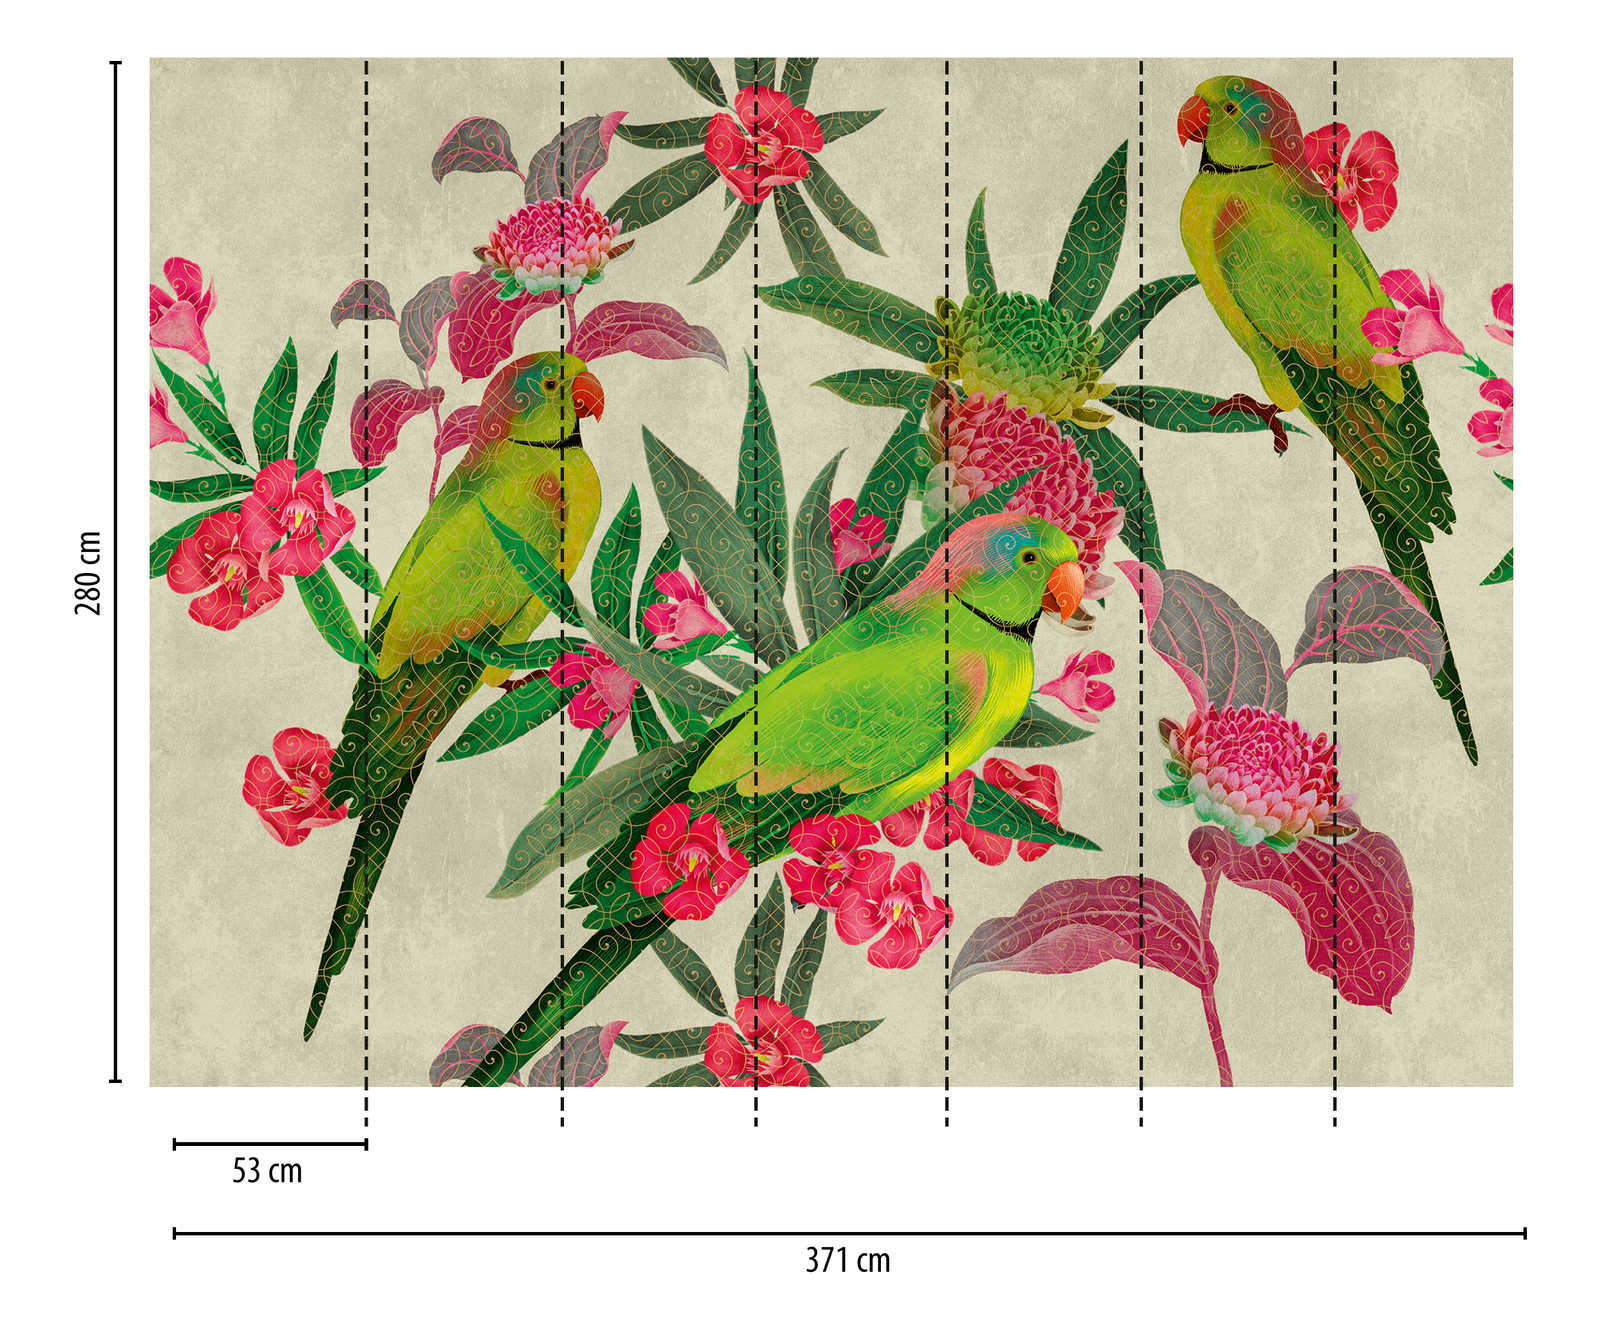             Papier peint Nouveauté | perroquets papier peint à motifs avec fleurs dans le style artistique
        